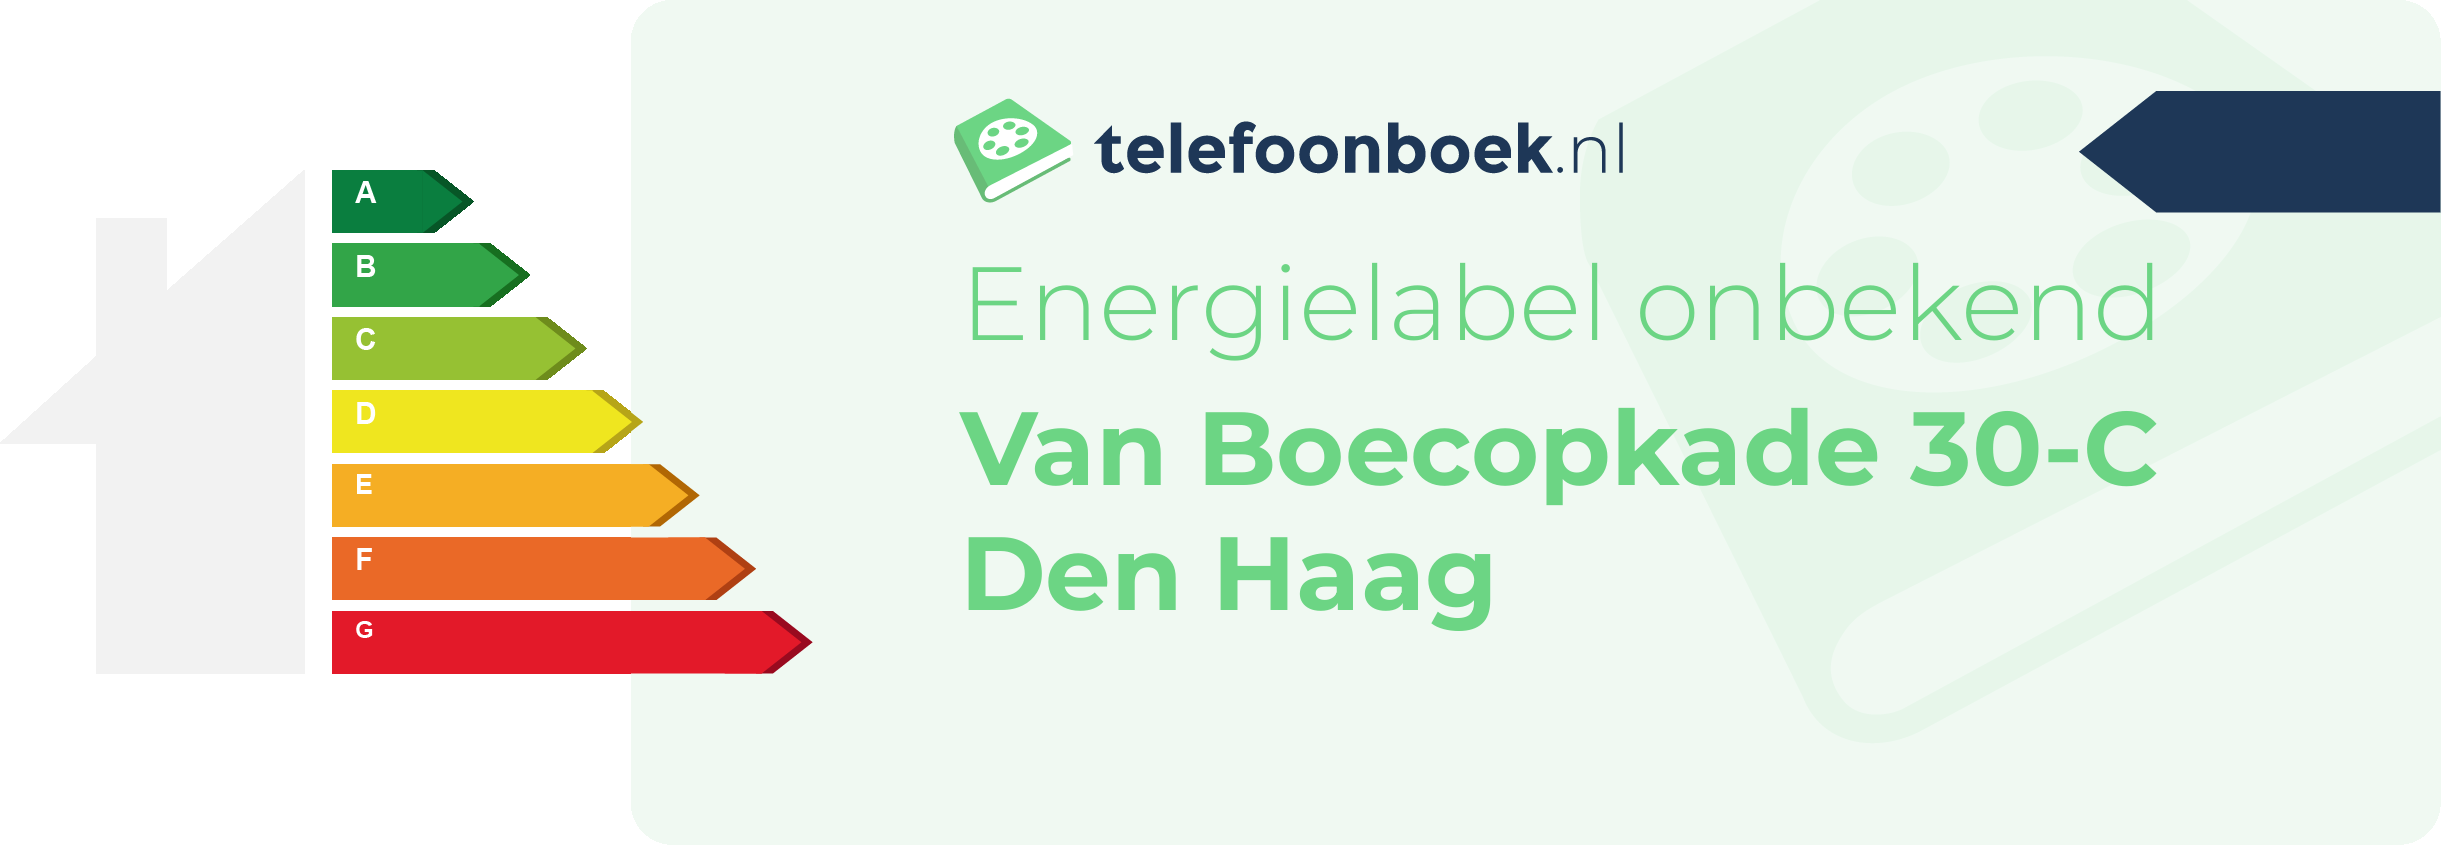 Energielabel Van Boecopkade 30-C Den Haag